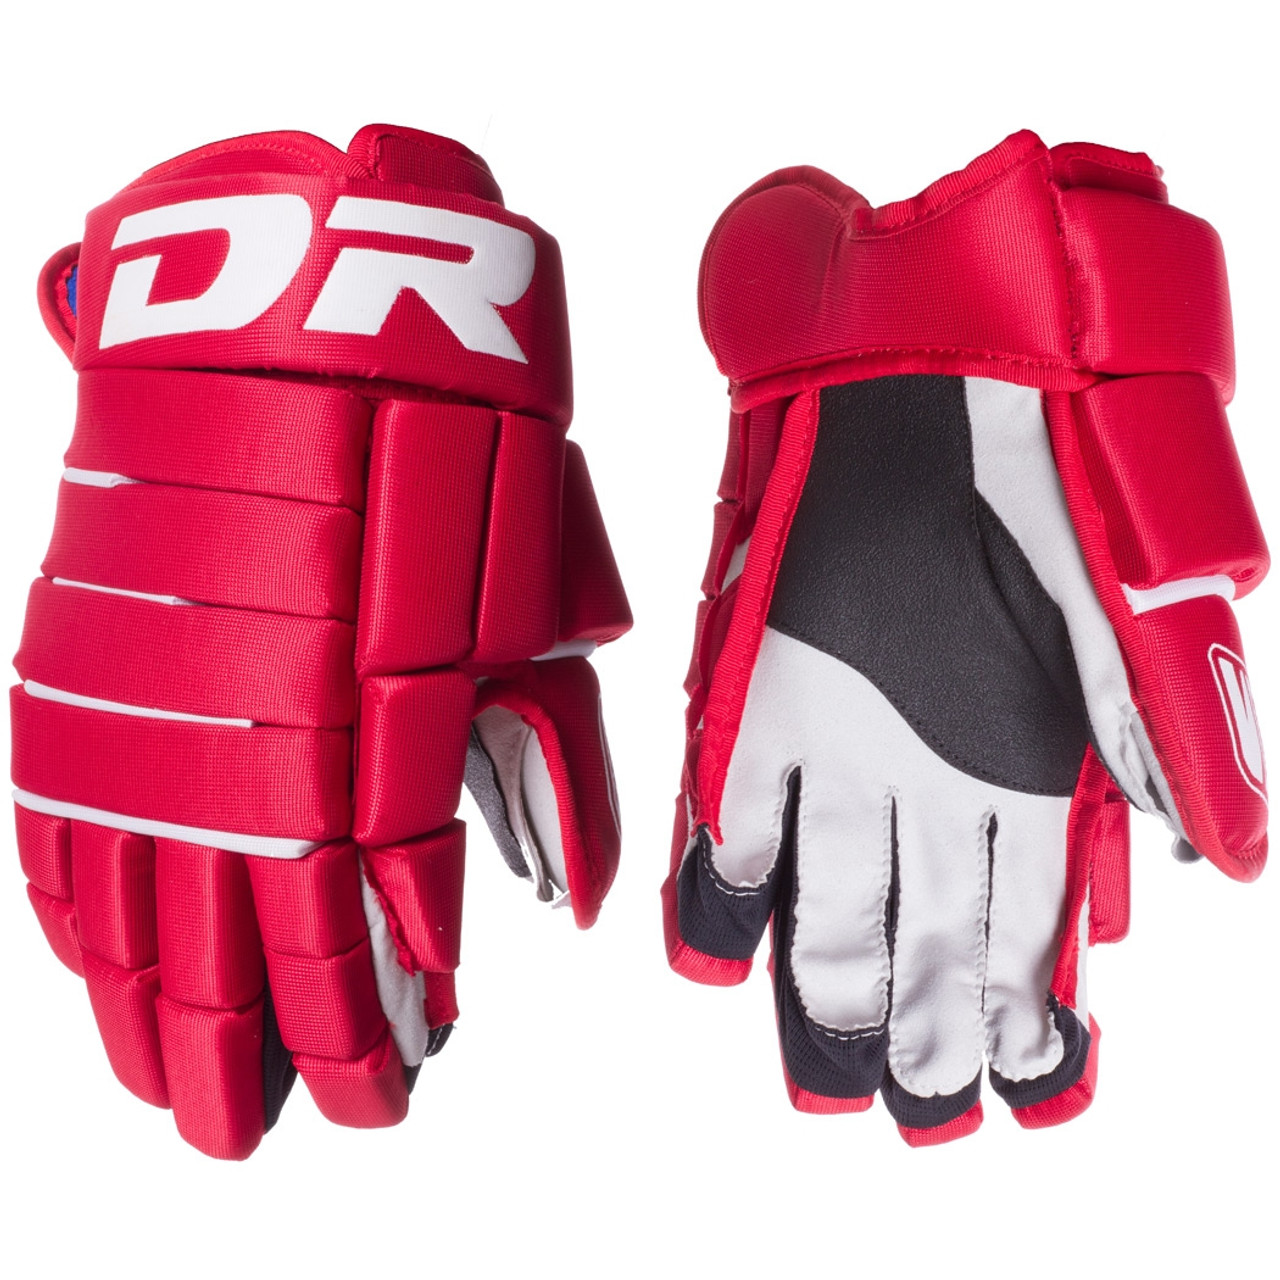 DR 613 Gloves - SR